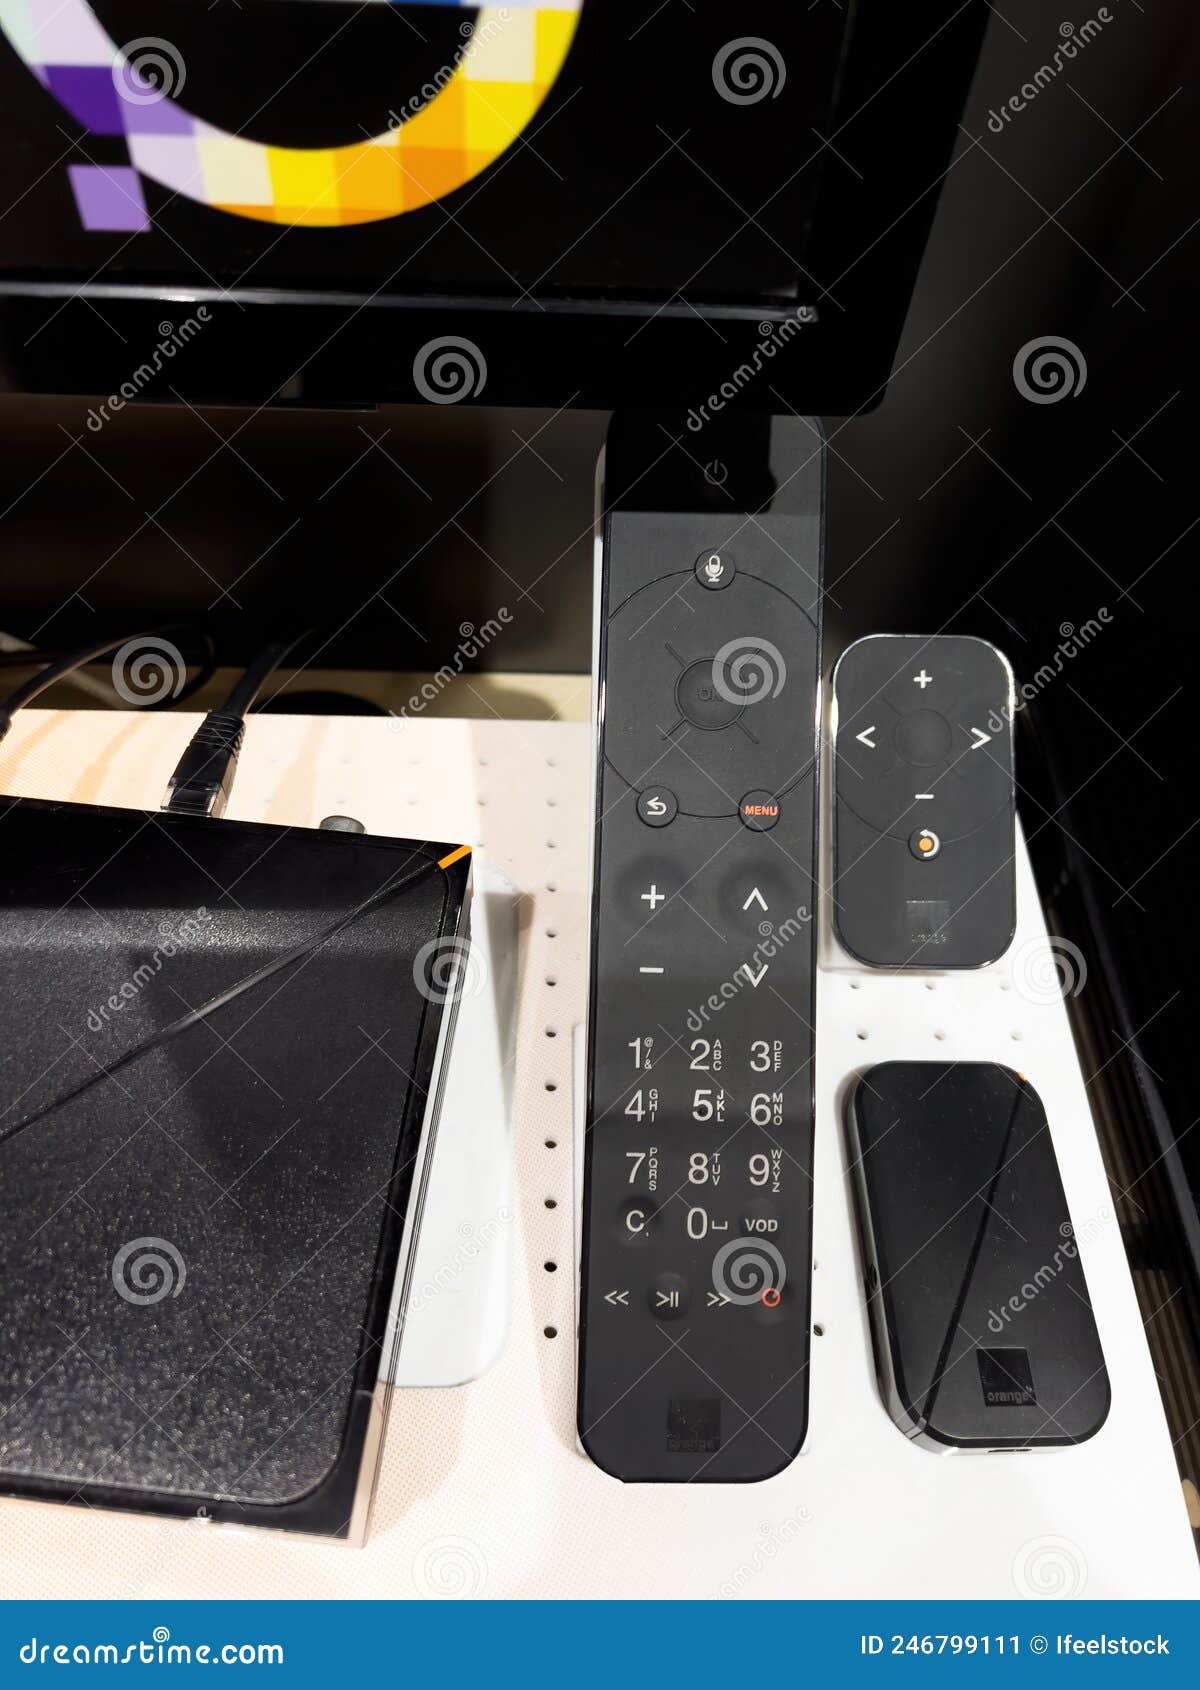 Close-up of Remote Control Internet TV Set-box of Orange TV Telecom Livebox  5 Editorial Photo - Image of closeup, technology: 246799111